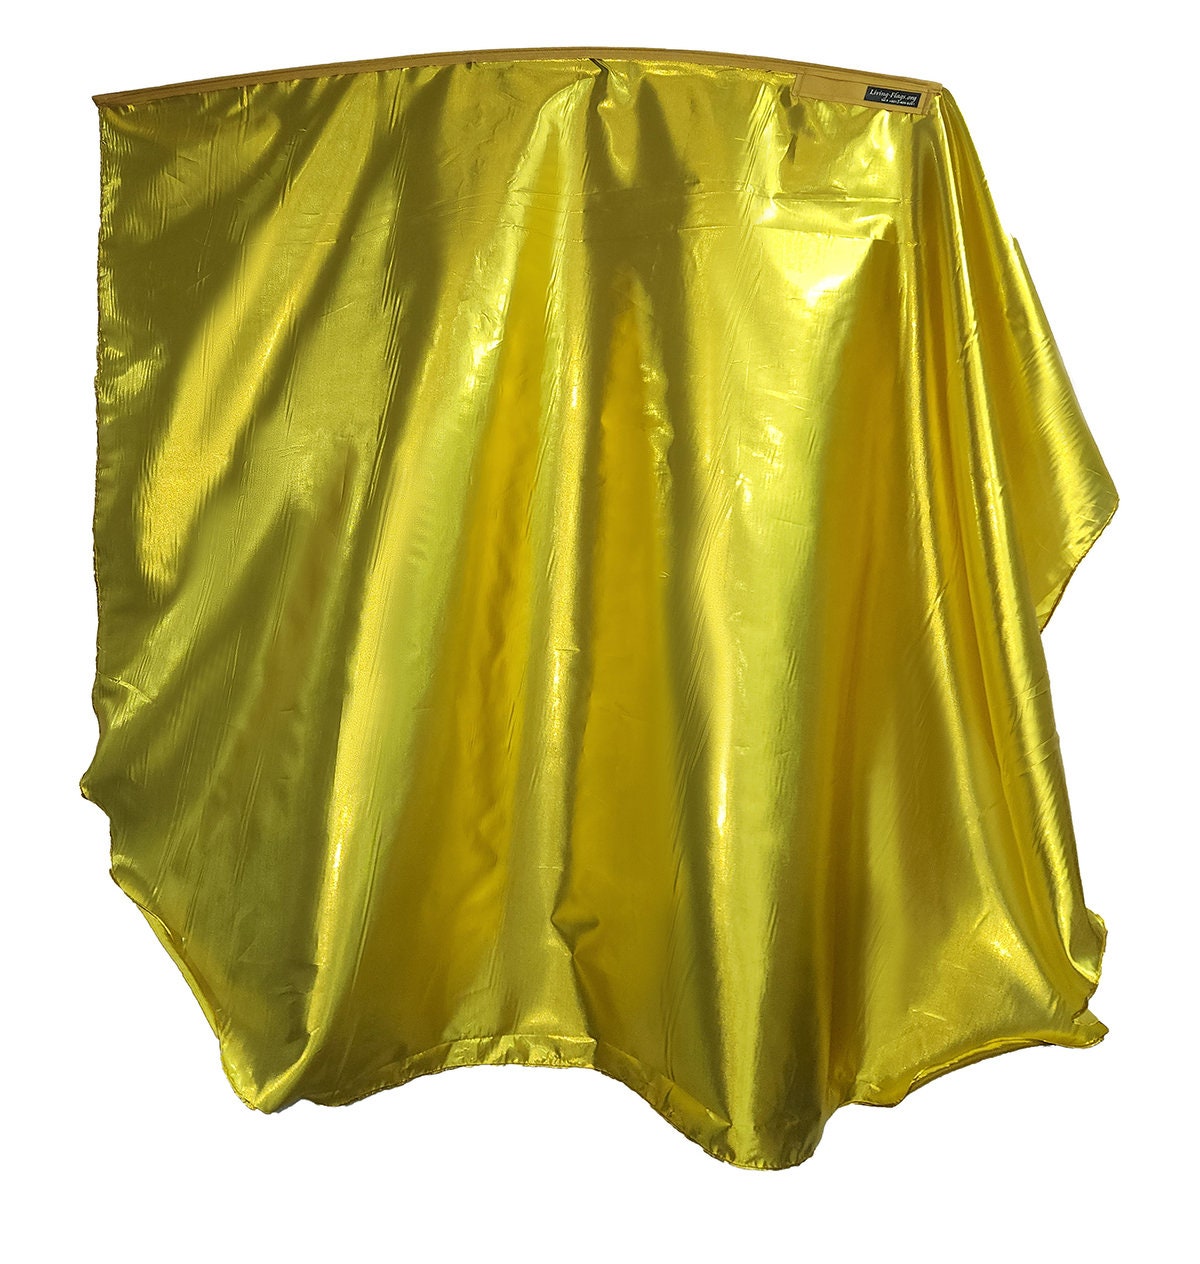 WXLL-Quill Liquid Metal 24k Gold Wing Flag - 40 "Varilla flexible